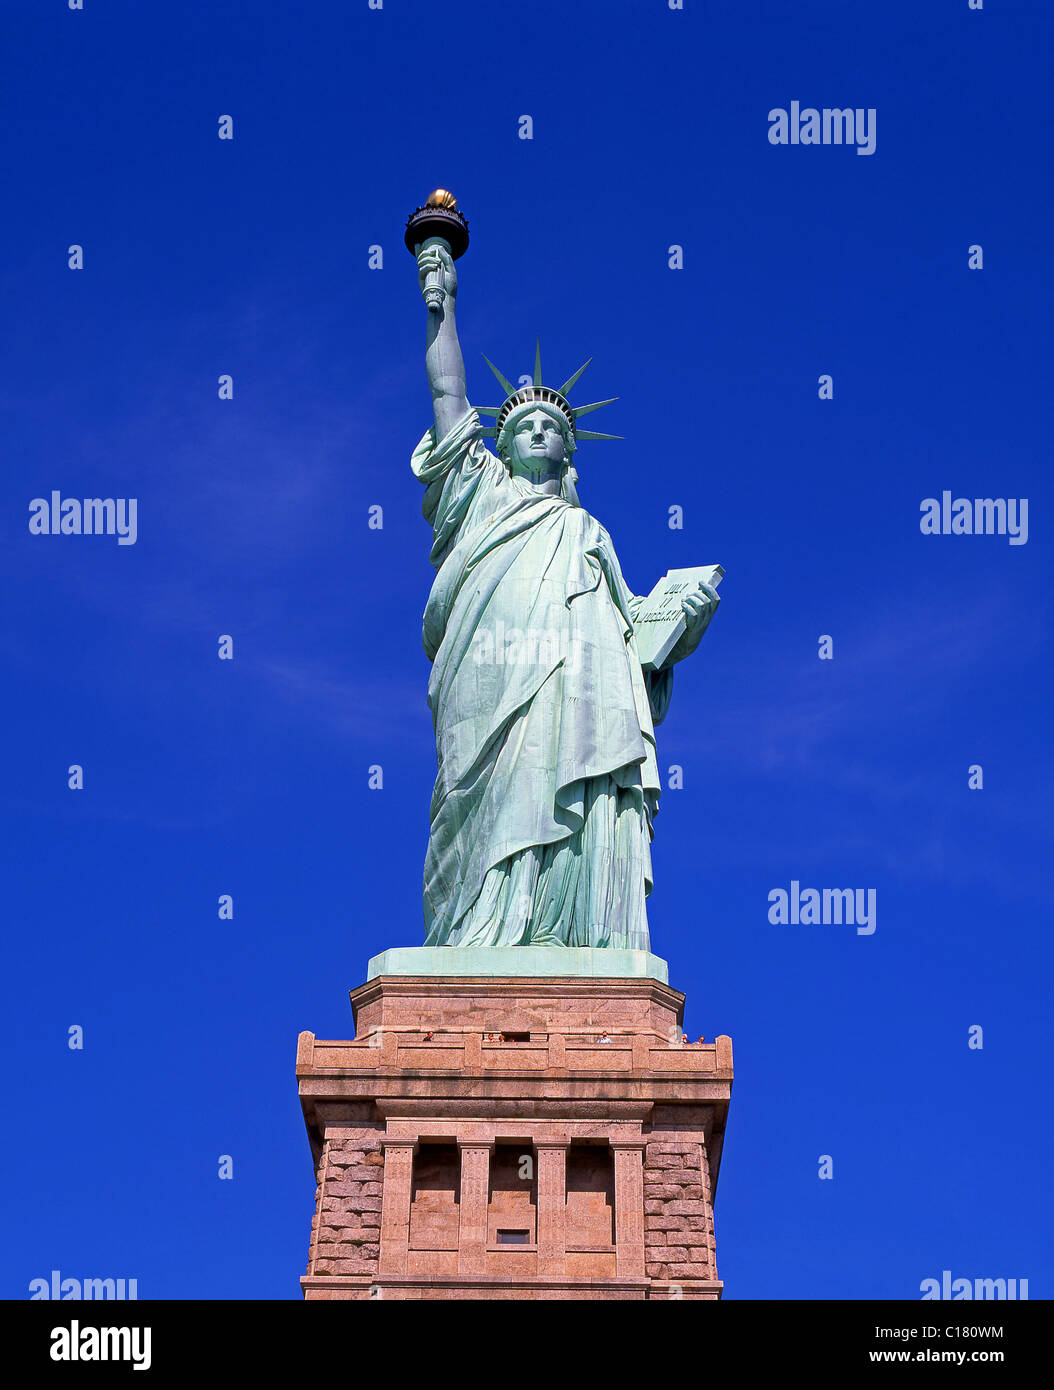 Monument National de la statue de la liberté, Liberty Island, New York, État de New York, États-Unis d'Amérique Banque D'Images